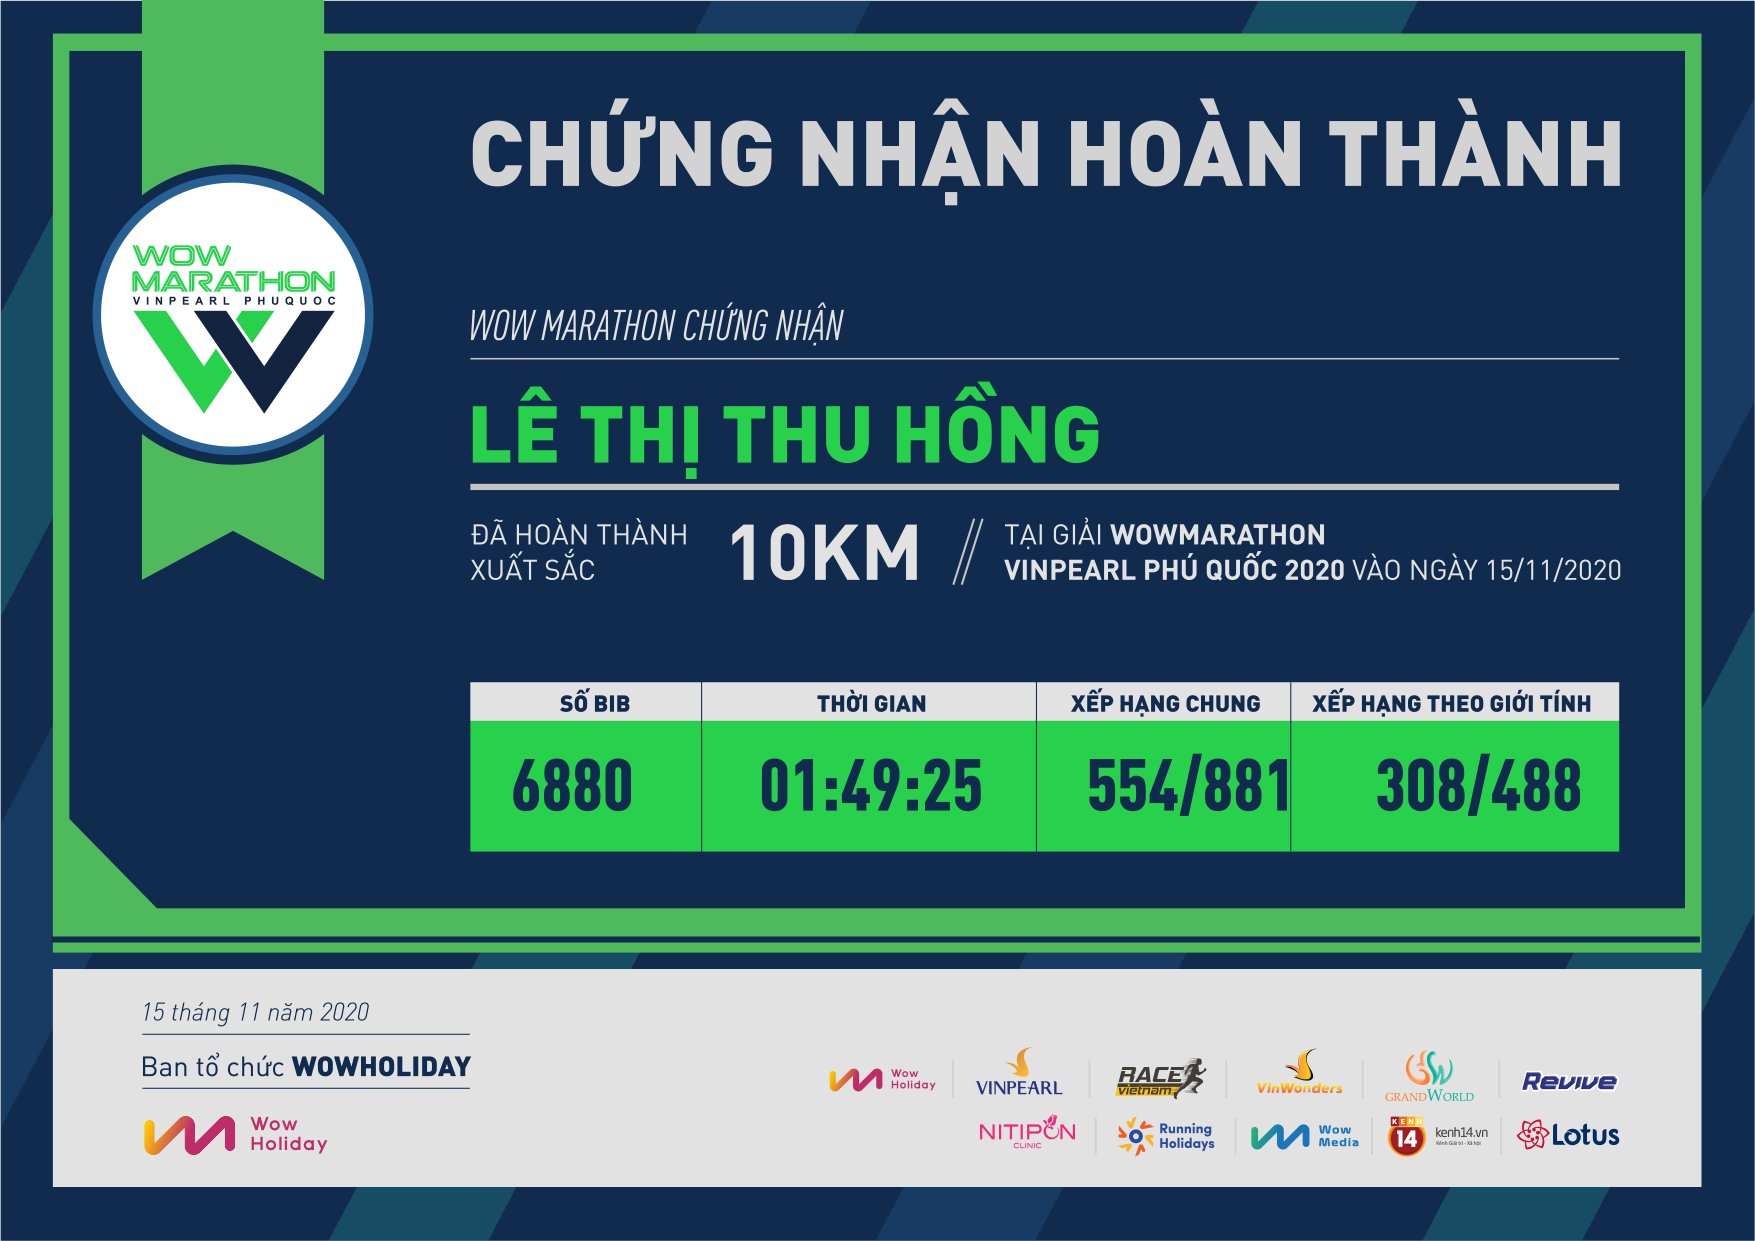 6880 - Lê Thị Thu Hồng